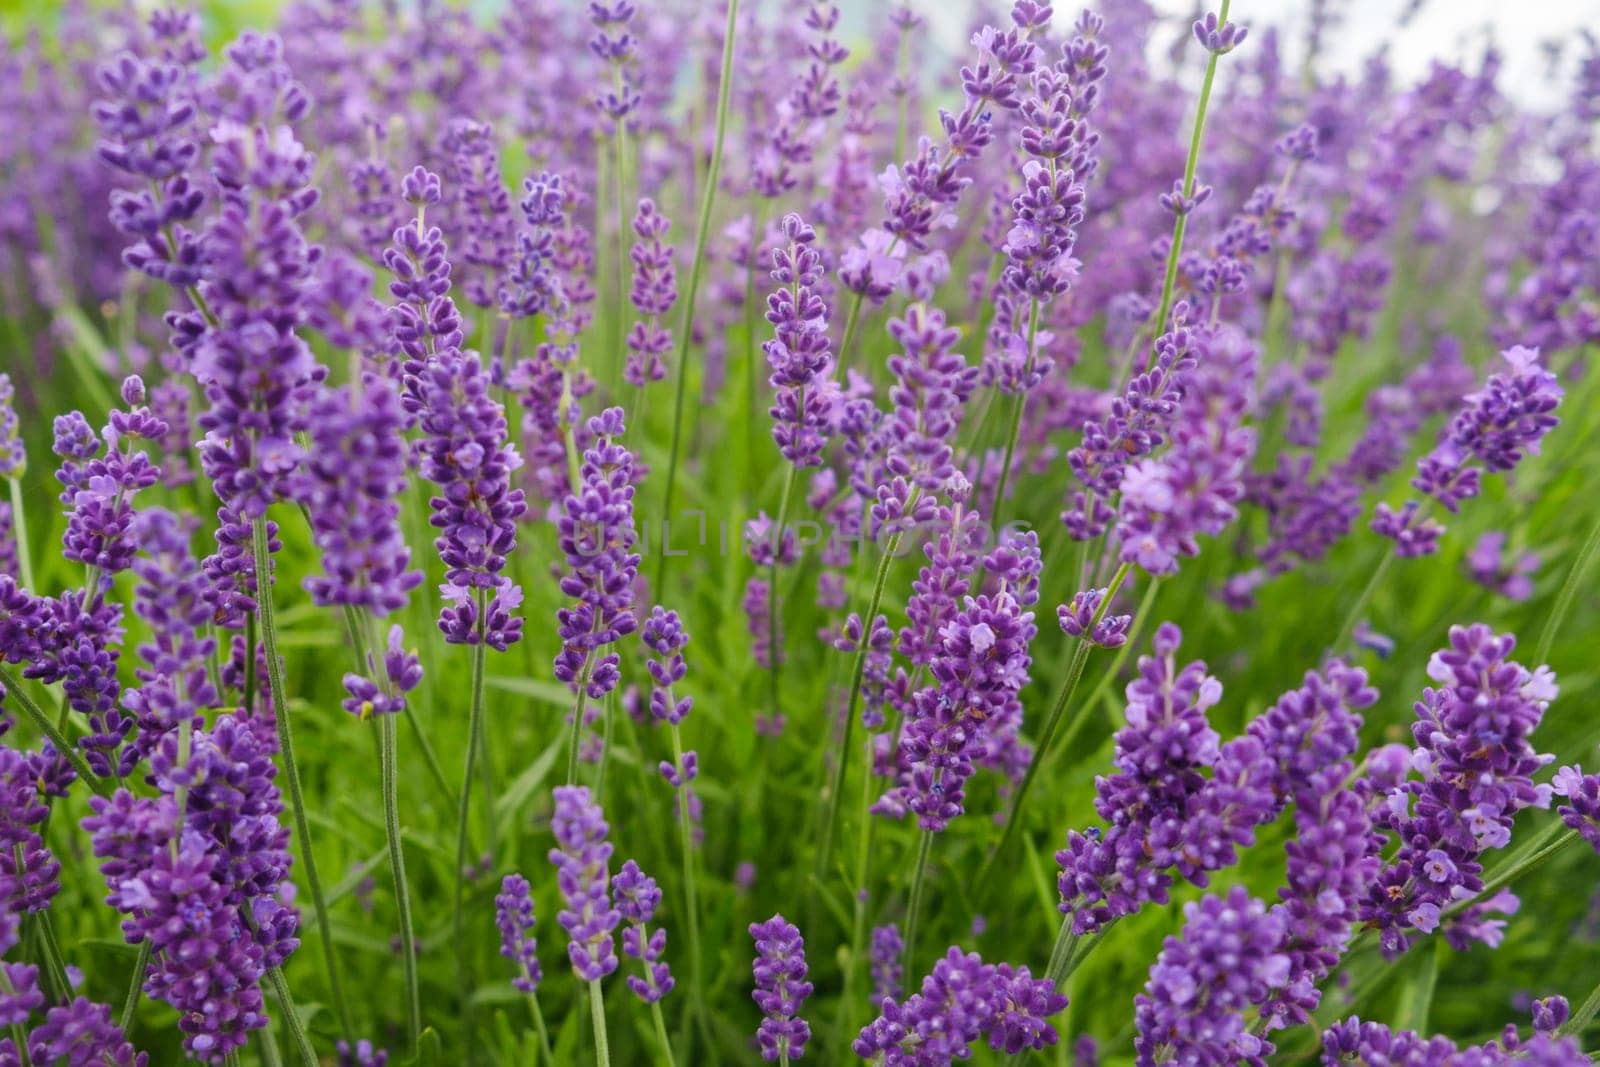 Soft focus flowers, beautiful lavender flowers blooming. by leonik